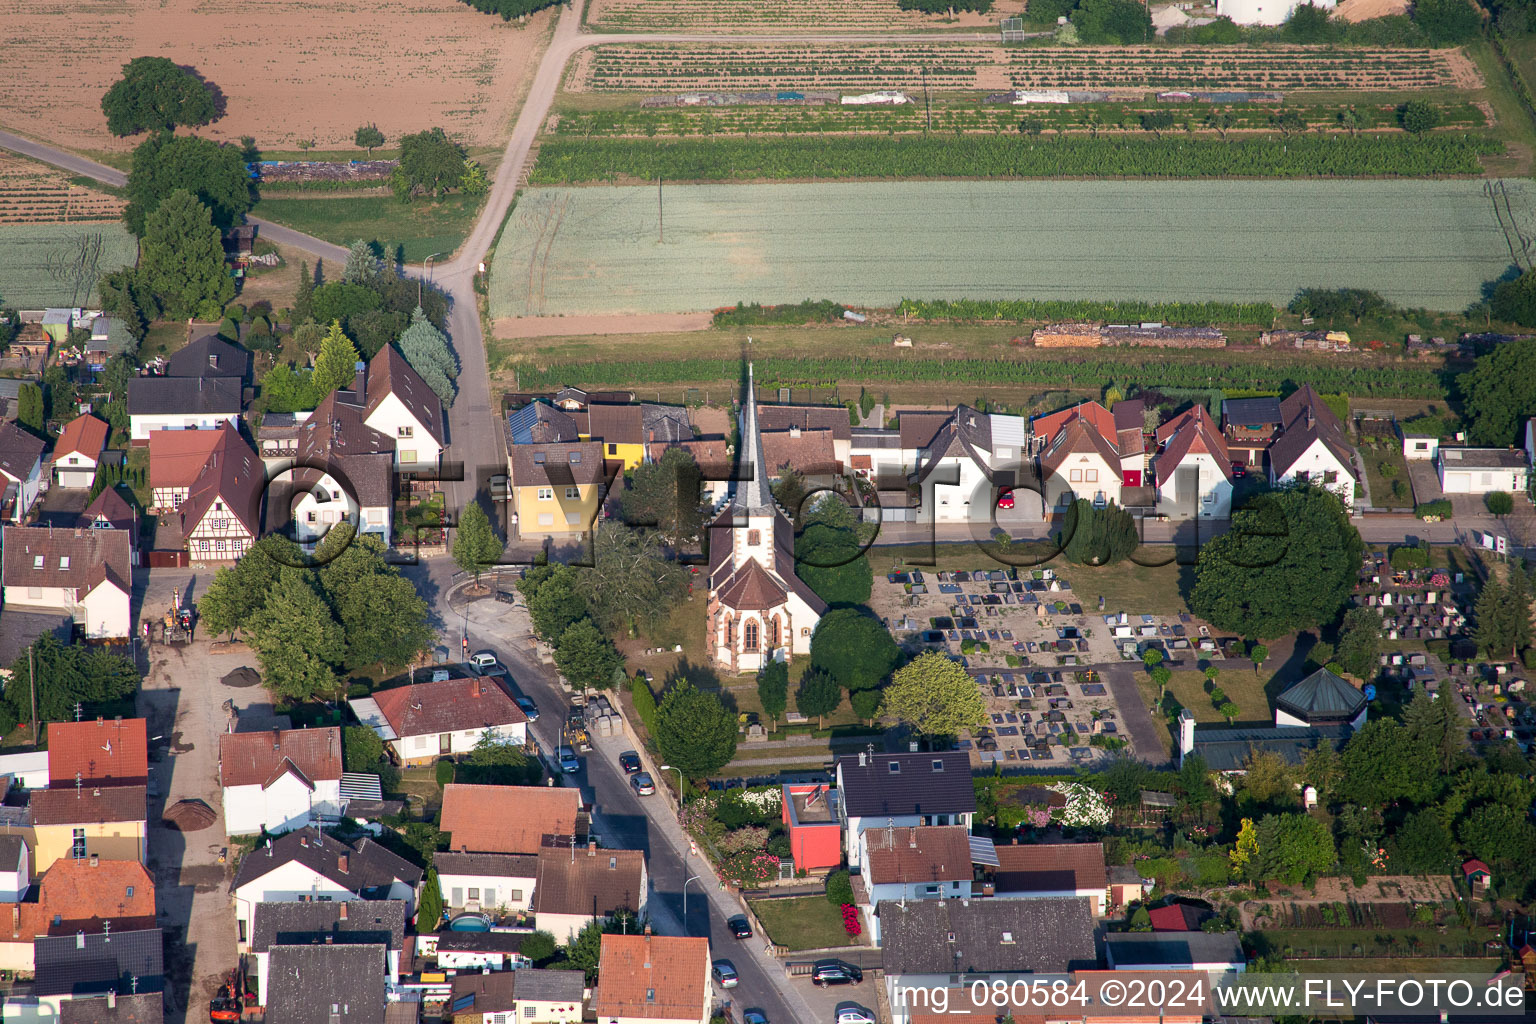 Vue aérienne de Église évangélique d'Unterdorf Lustadt au centre du village à Lustadt dans le département Rhénanie-Palatinat, Allemagne